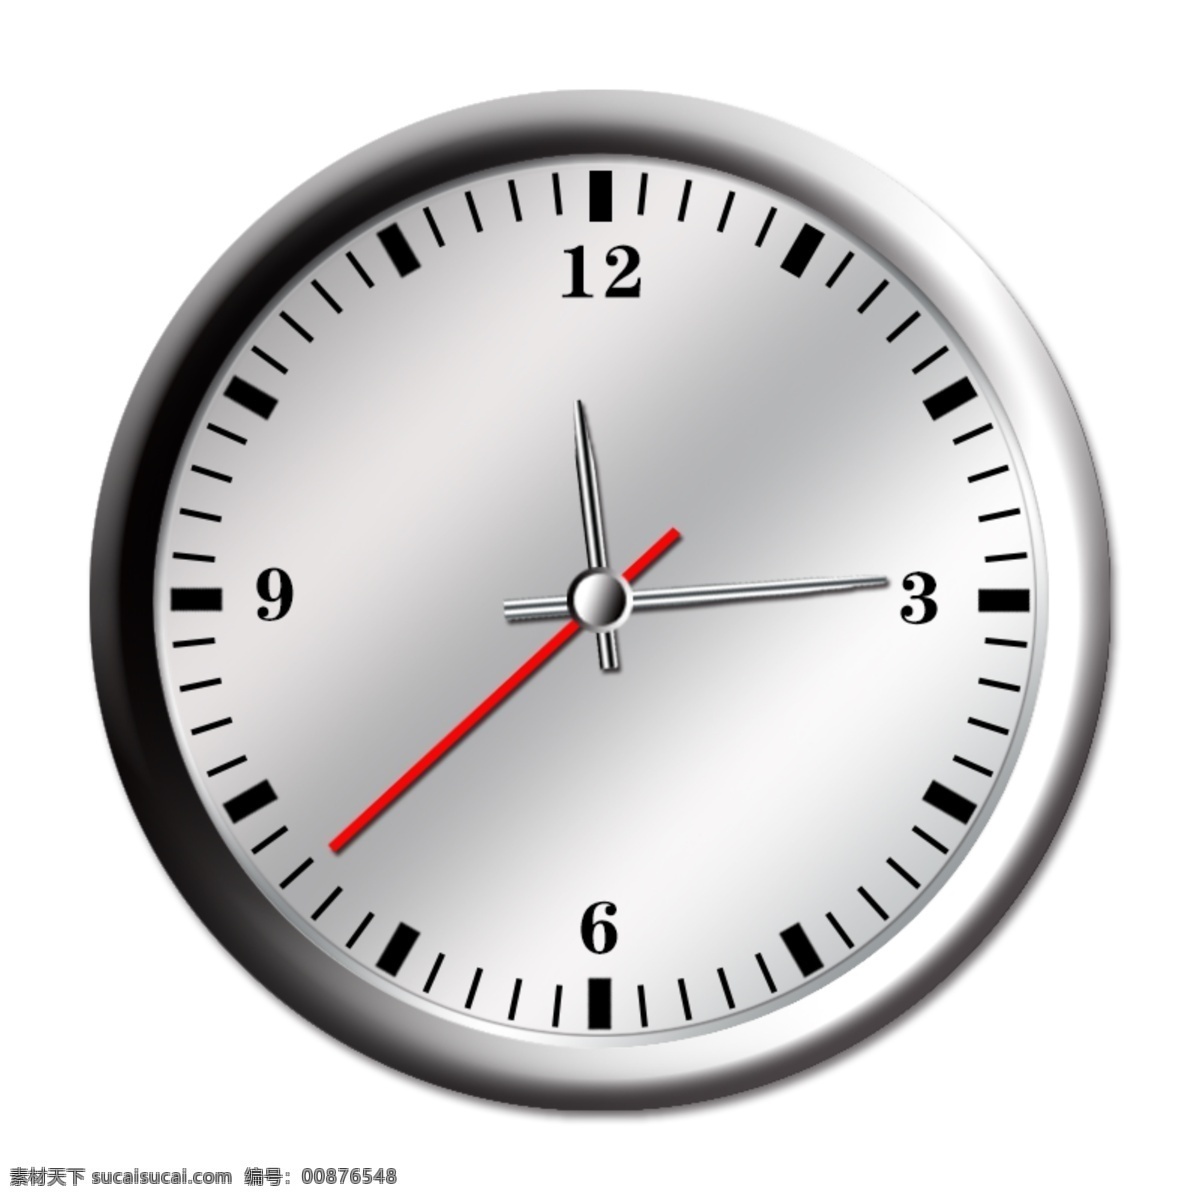 钟表 时间 分针 时针秒针时刻 时针 秒针 时刻 现代科技 数码产品